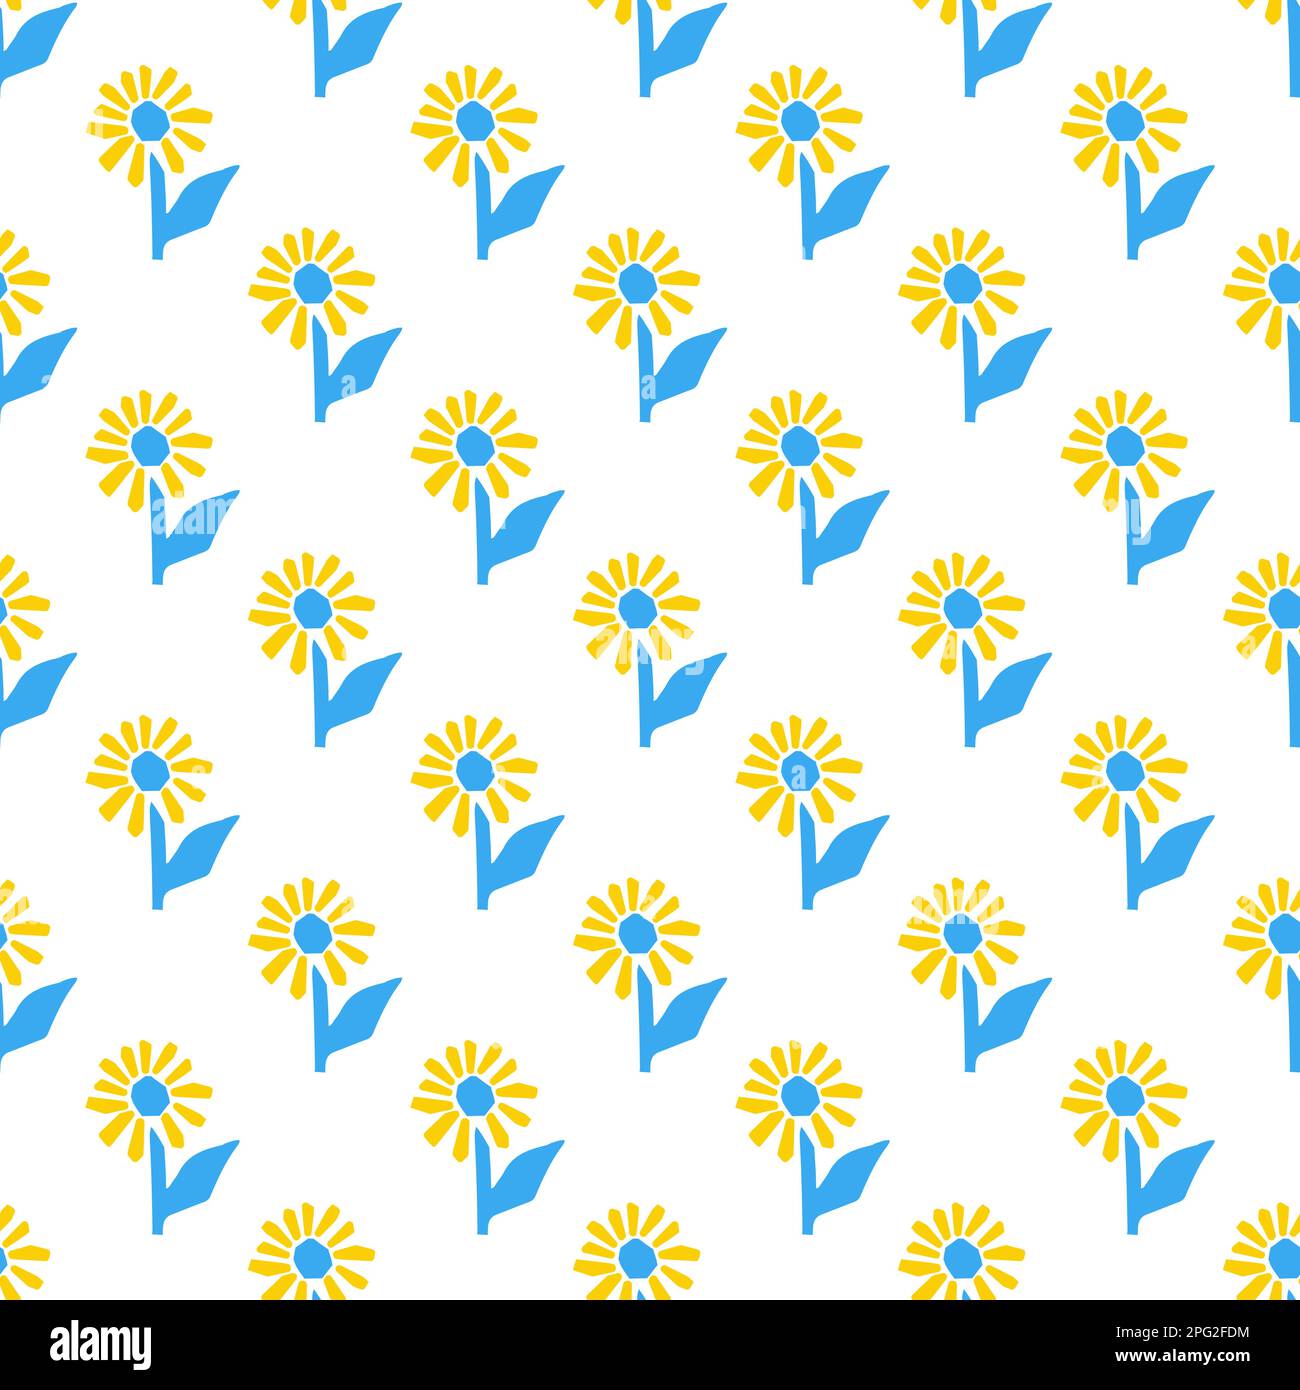 Motif sans couture avec illustration stylisée tournesol de style de coupe de couleur bleue et jaune sur fond blanc Illustration de Vecteur